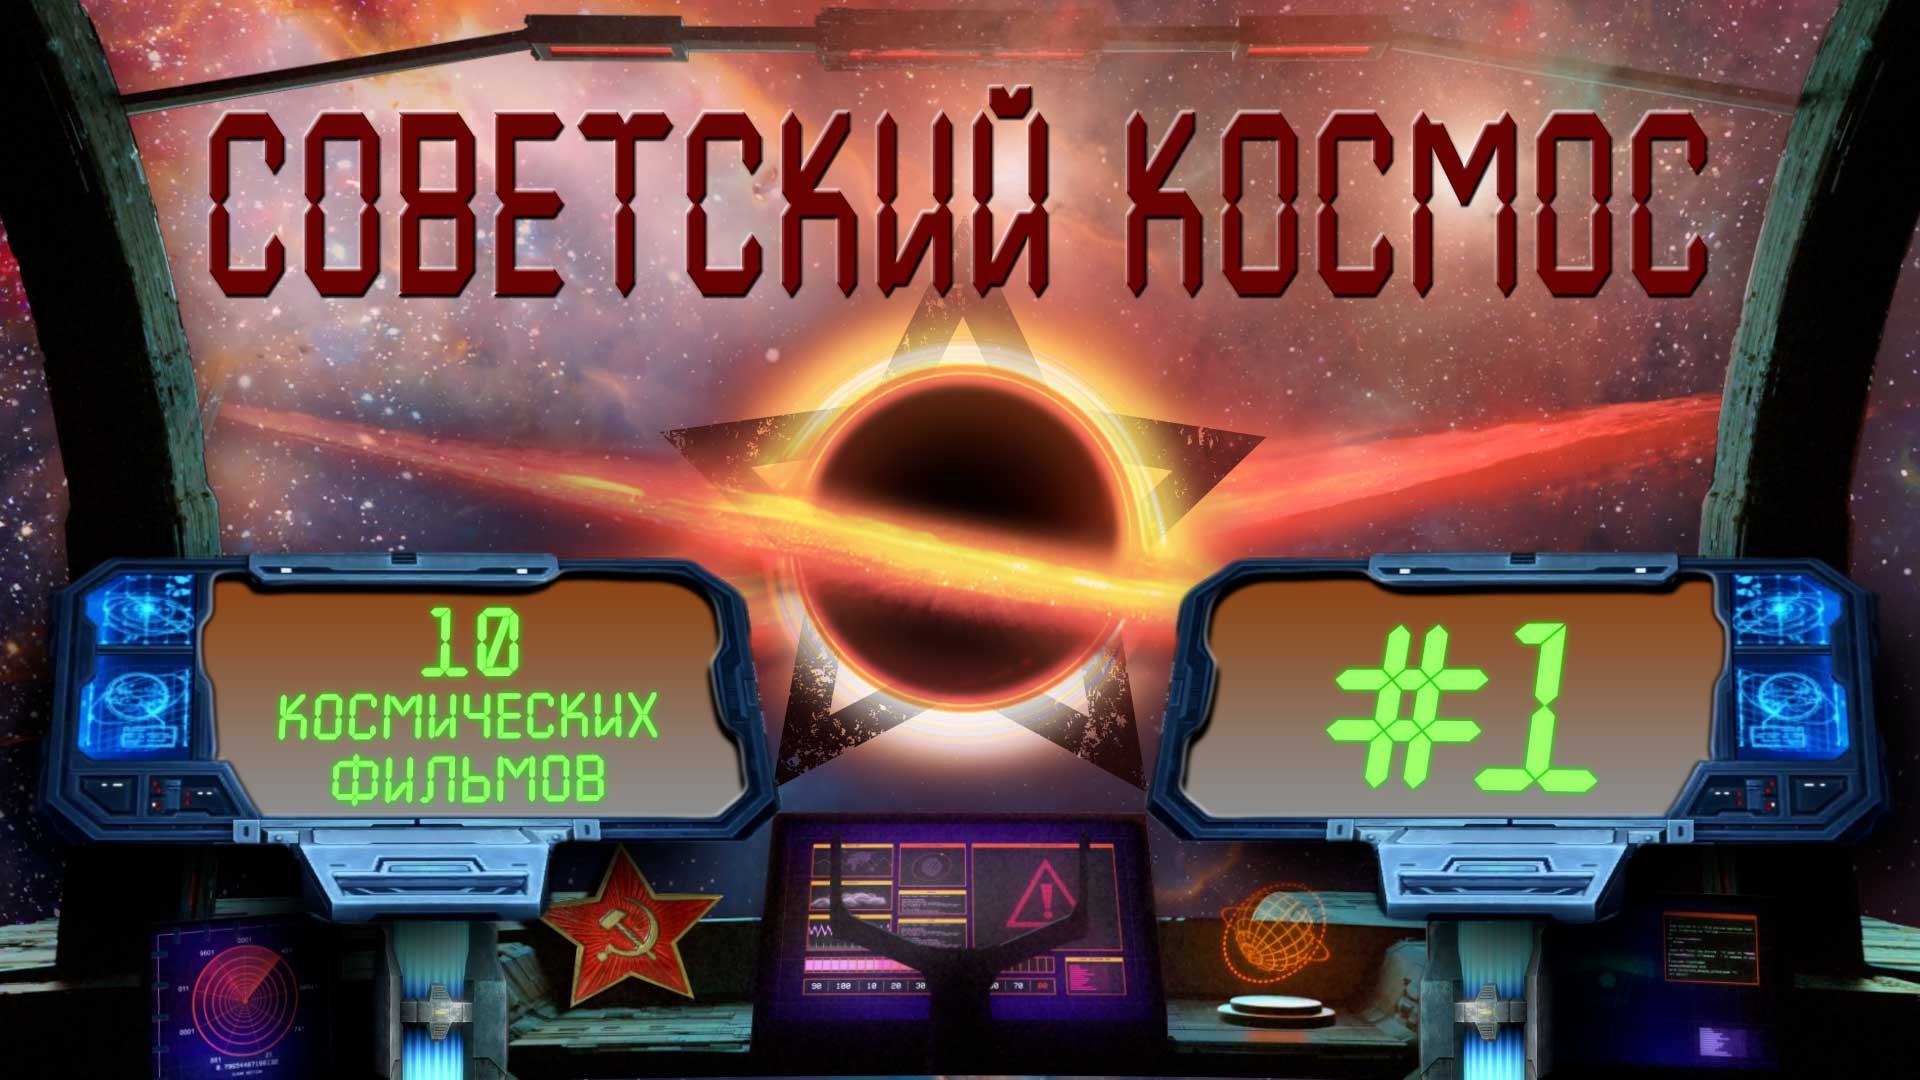 Советский КОСМОС I 10 космических фильмов I #1